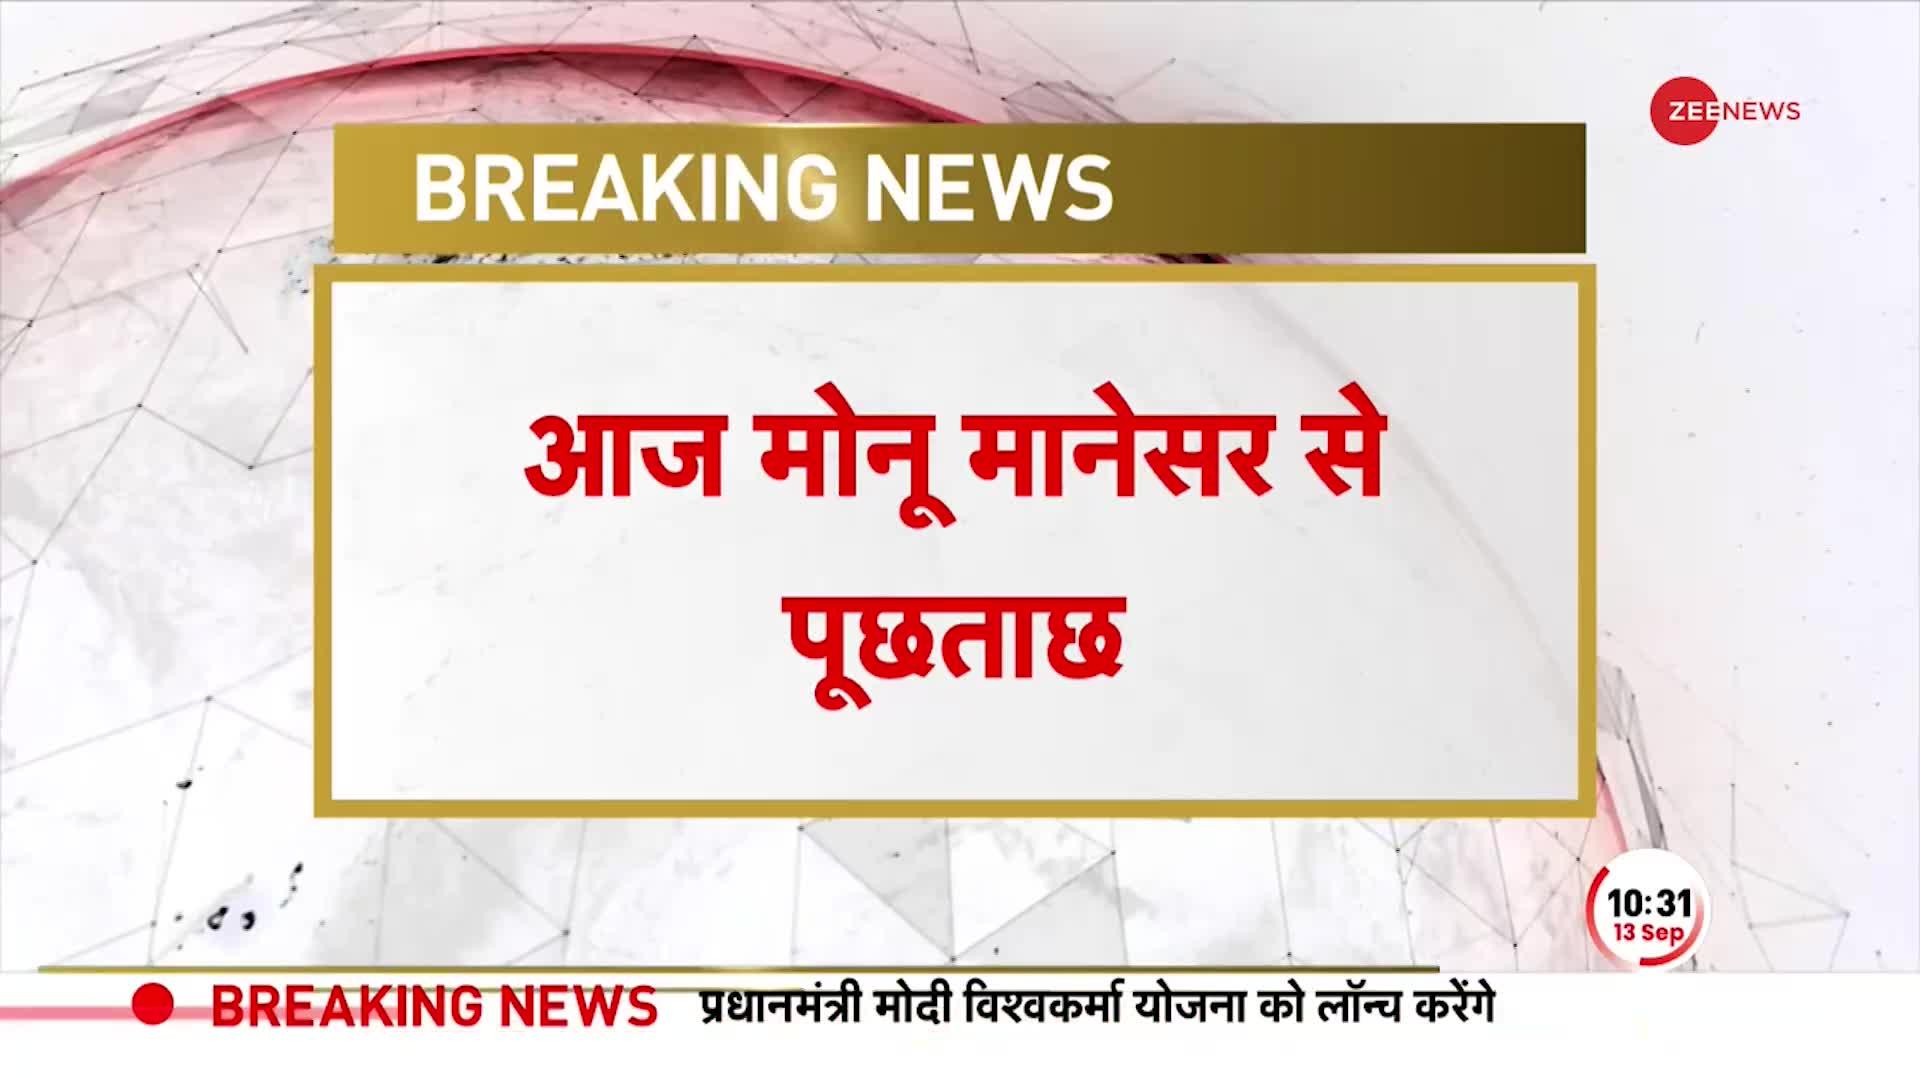 Breaking News: मोनू मानेसर से पूछताछ करेगी राजस्थान पुलिस, VHP ने मोनू की गिरफ्तारी का विरोध किया !